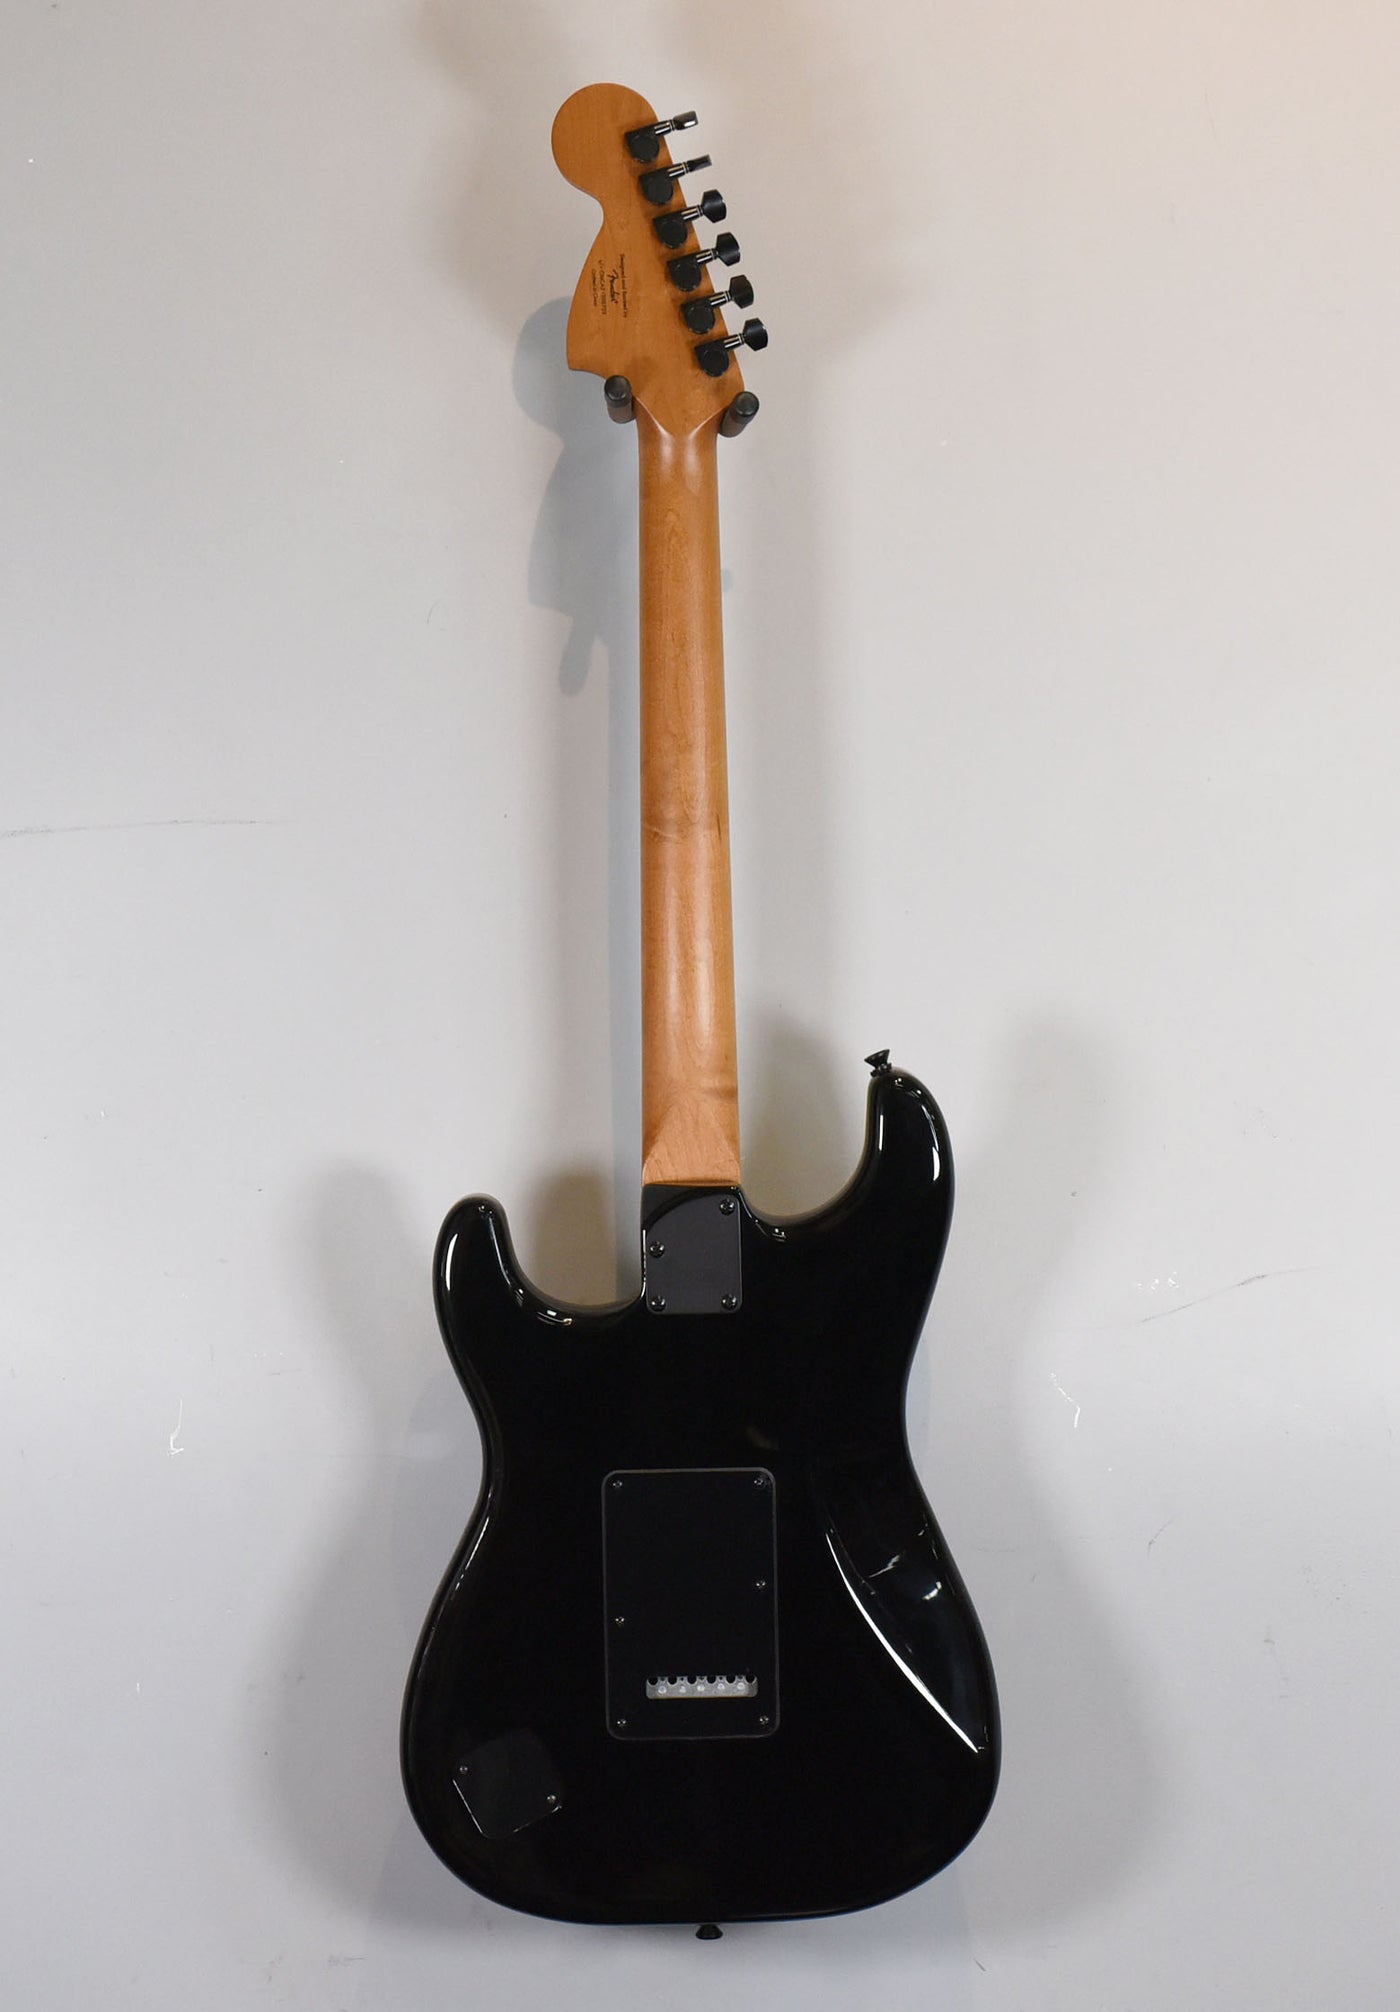 Contemporary Stratocaster Special - Black, '21